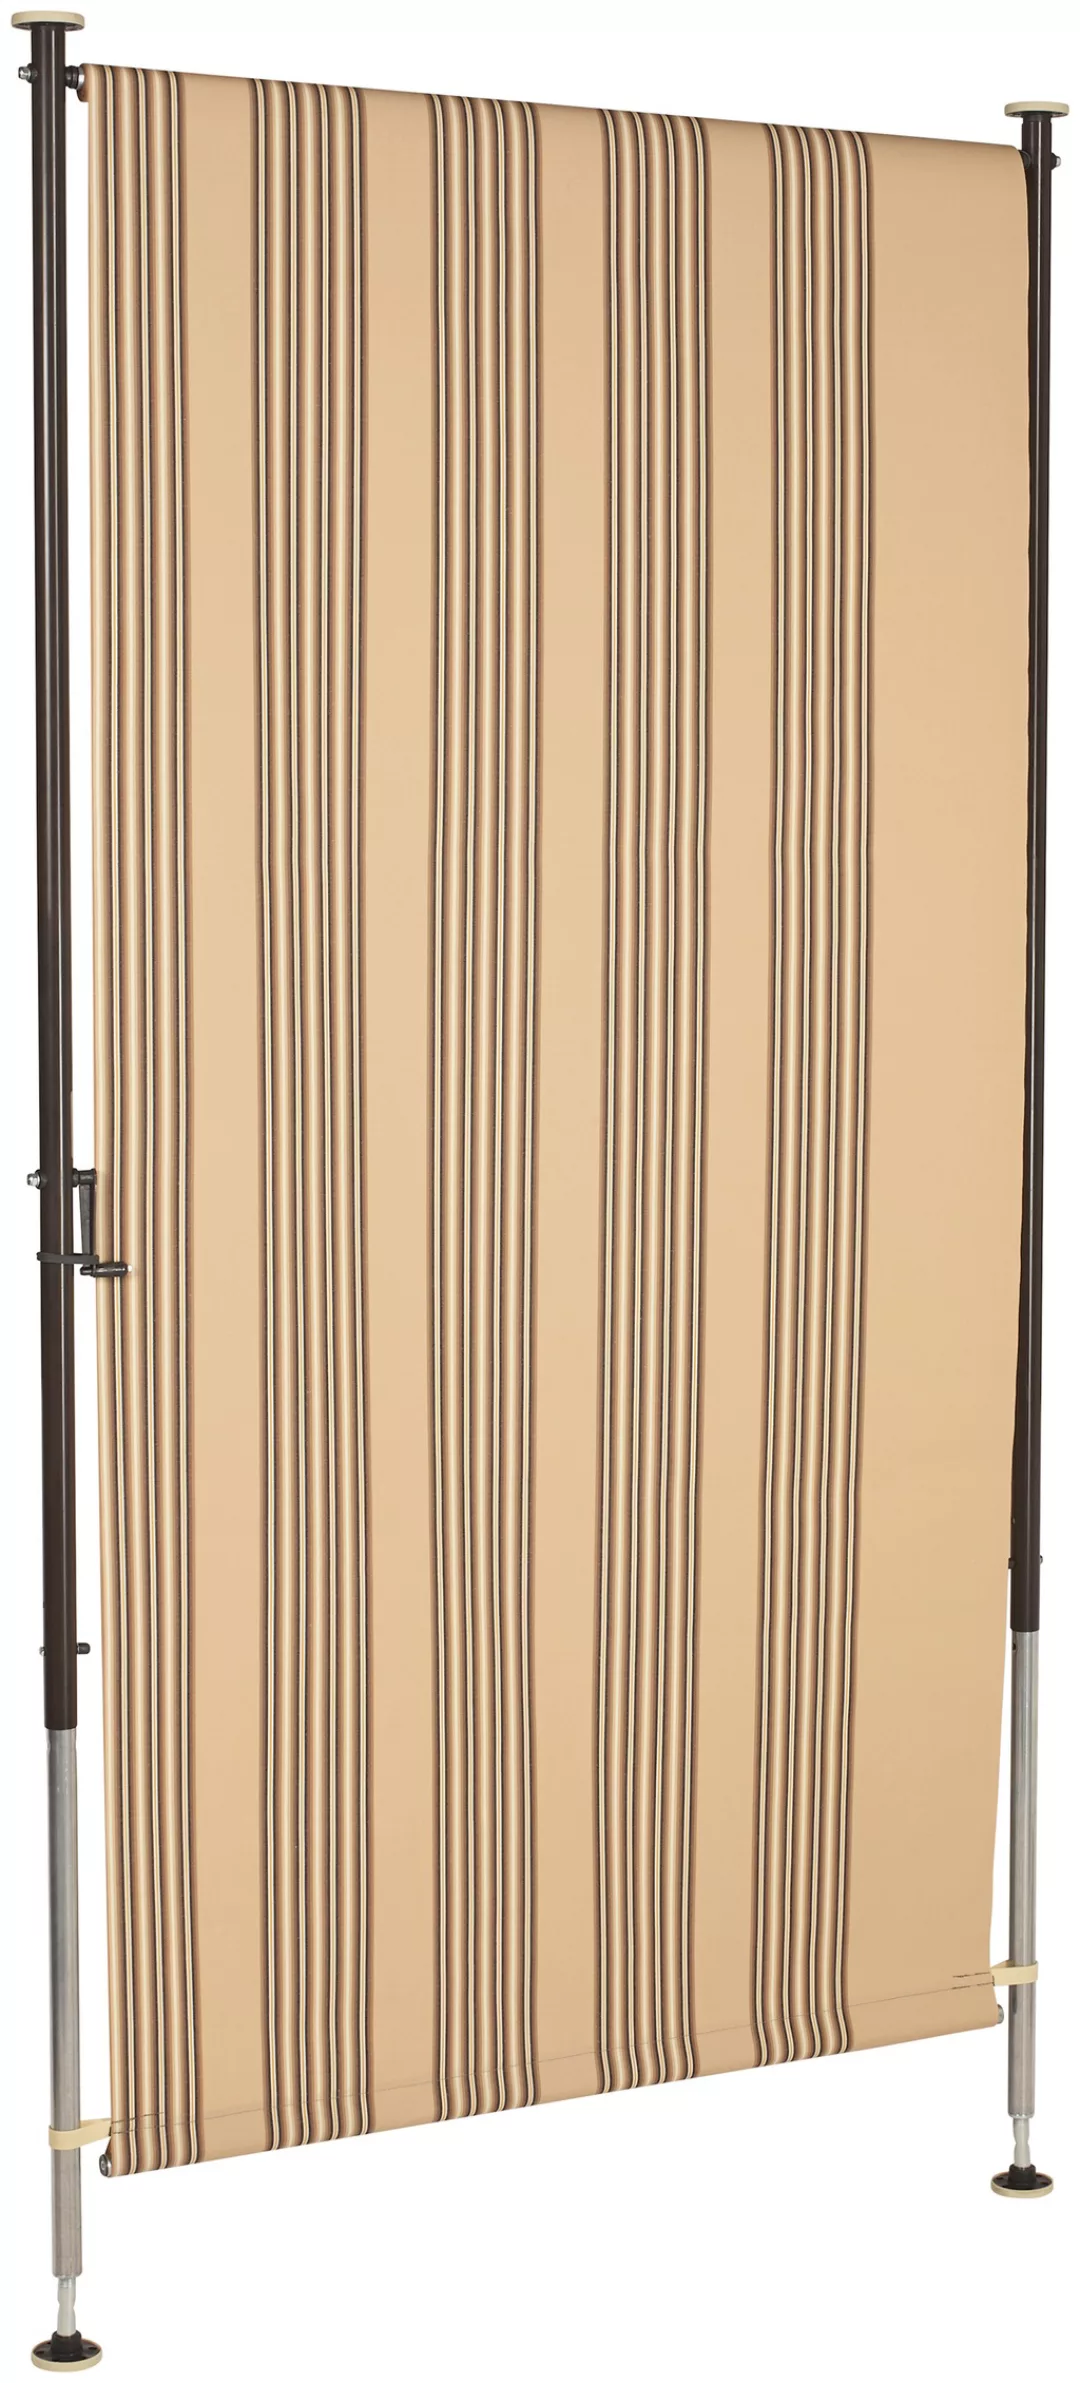 Angerer Freizeitmöbel Klemm-Senkrechtmarkise, beige/braun, BxH: 120x225 cm günstig online kaufen